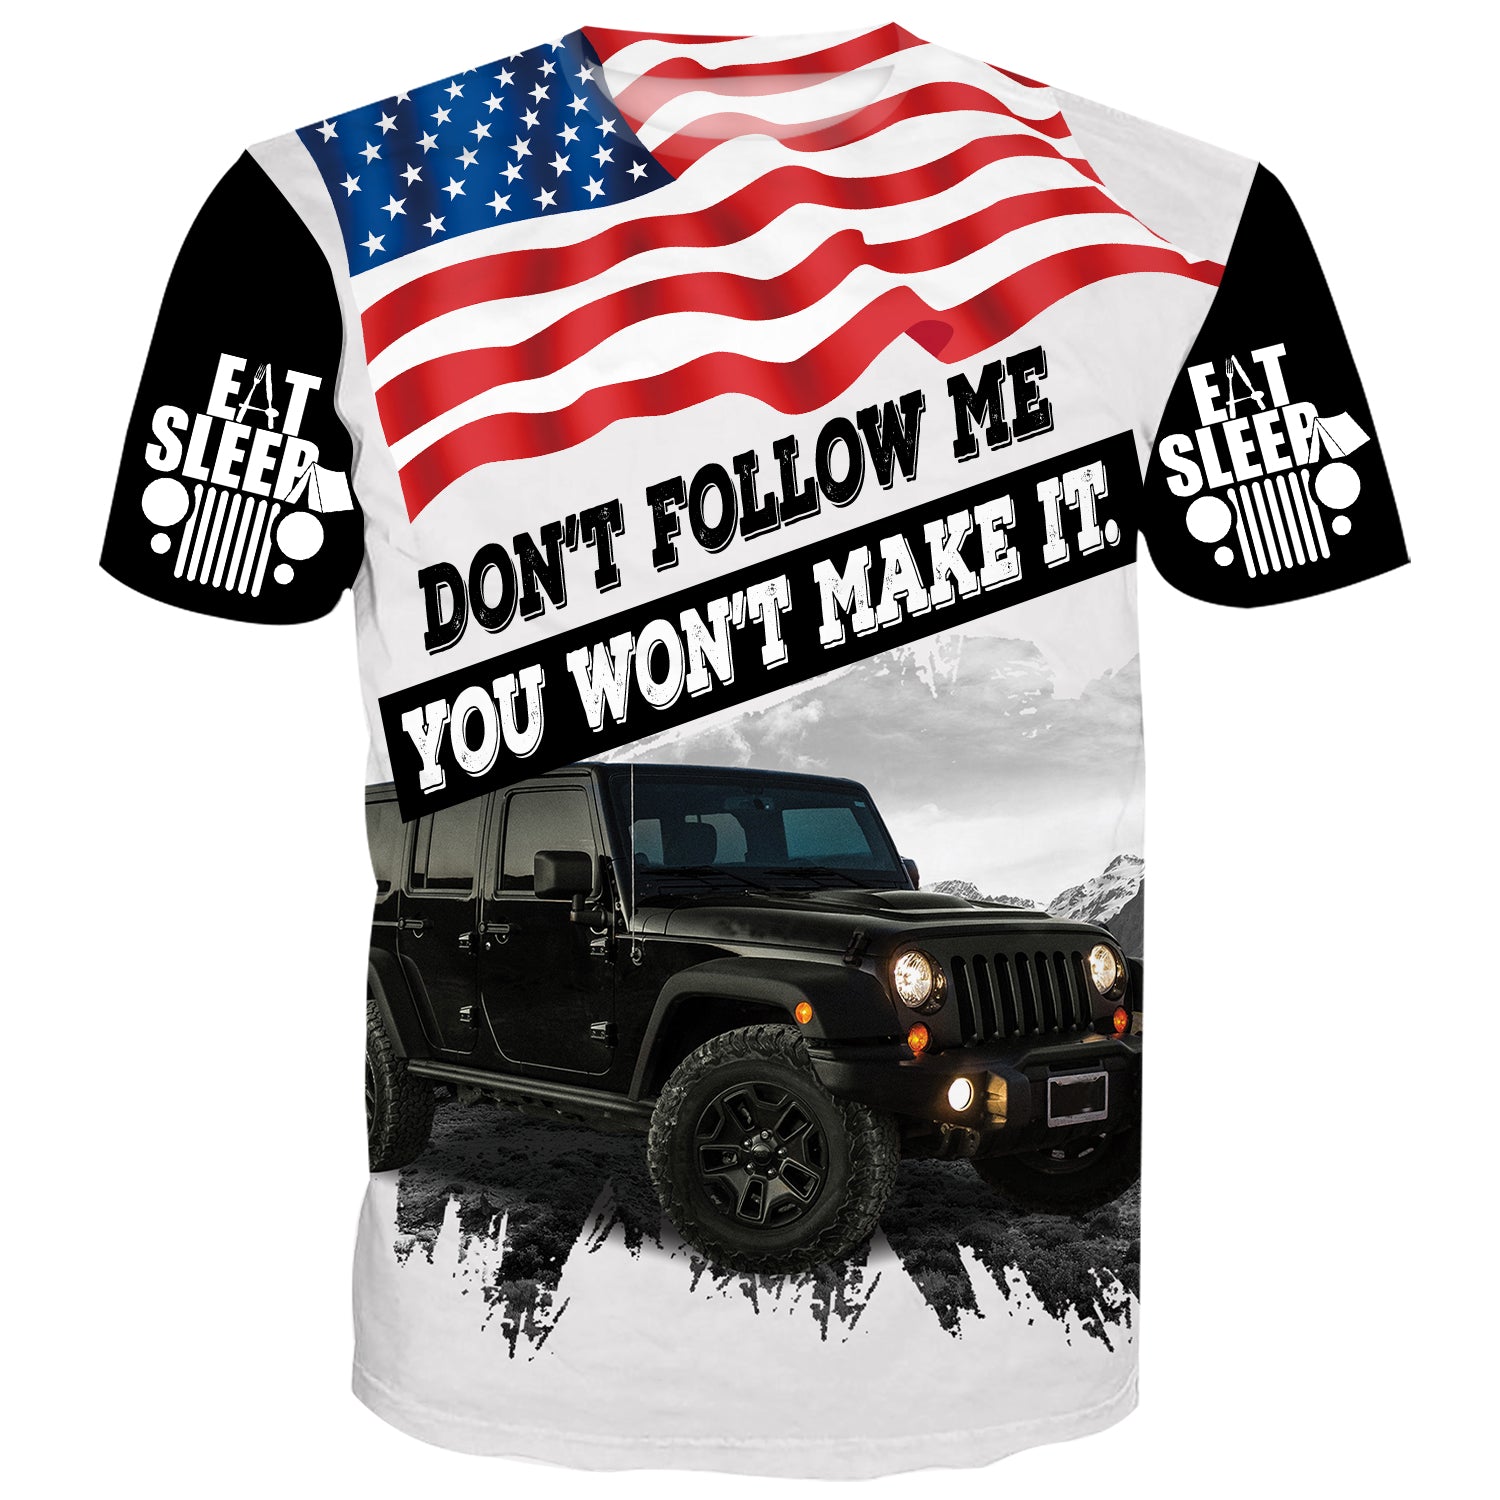 Don't follow me, you won't make it - Jeep T-Shirt